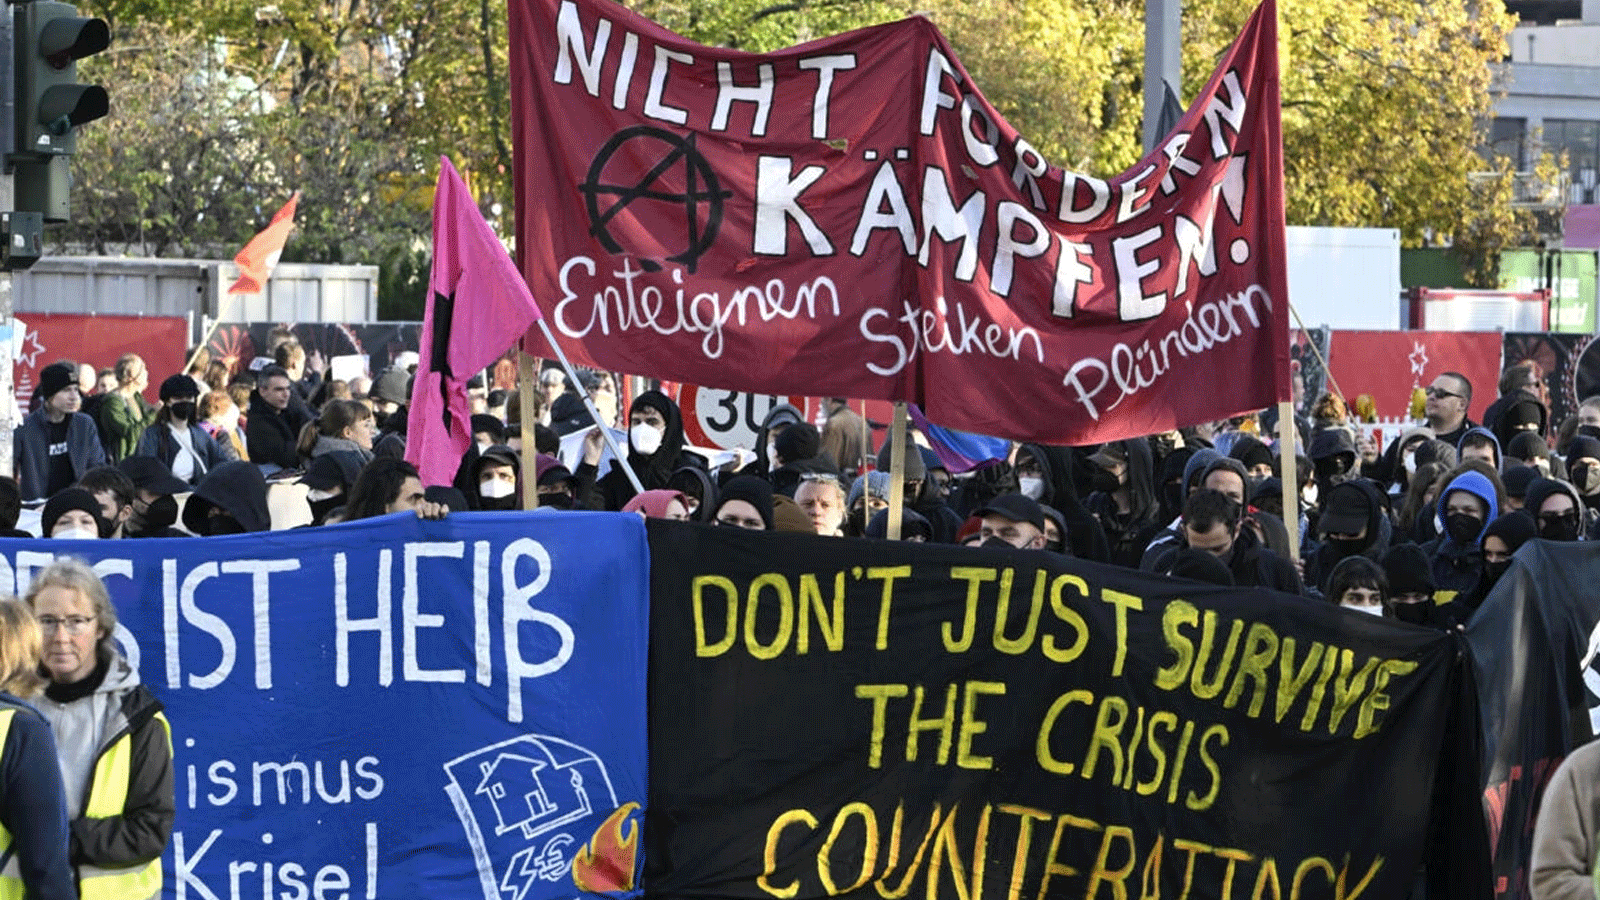  المتظاهرون خرجوا في مسيرة في أنحاء العاصمة الألمانية بعد دعوة من المنظمات اليسارية للاحتجاج على ارتفاع الأسعار والإيجارات